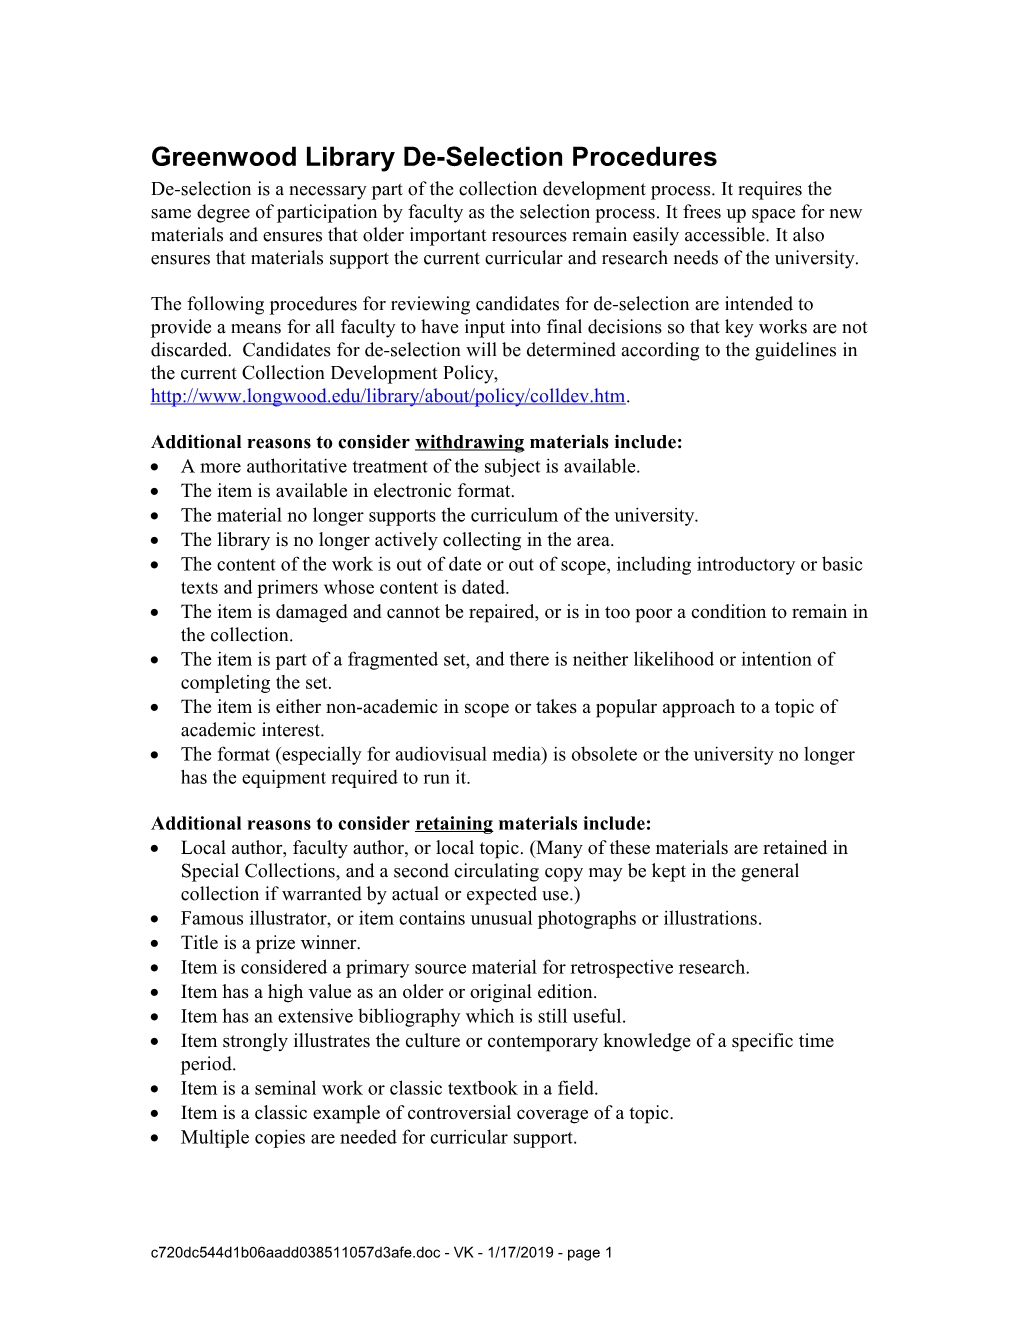 Greenwood Library De-Selection Procedures Draft